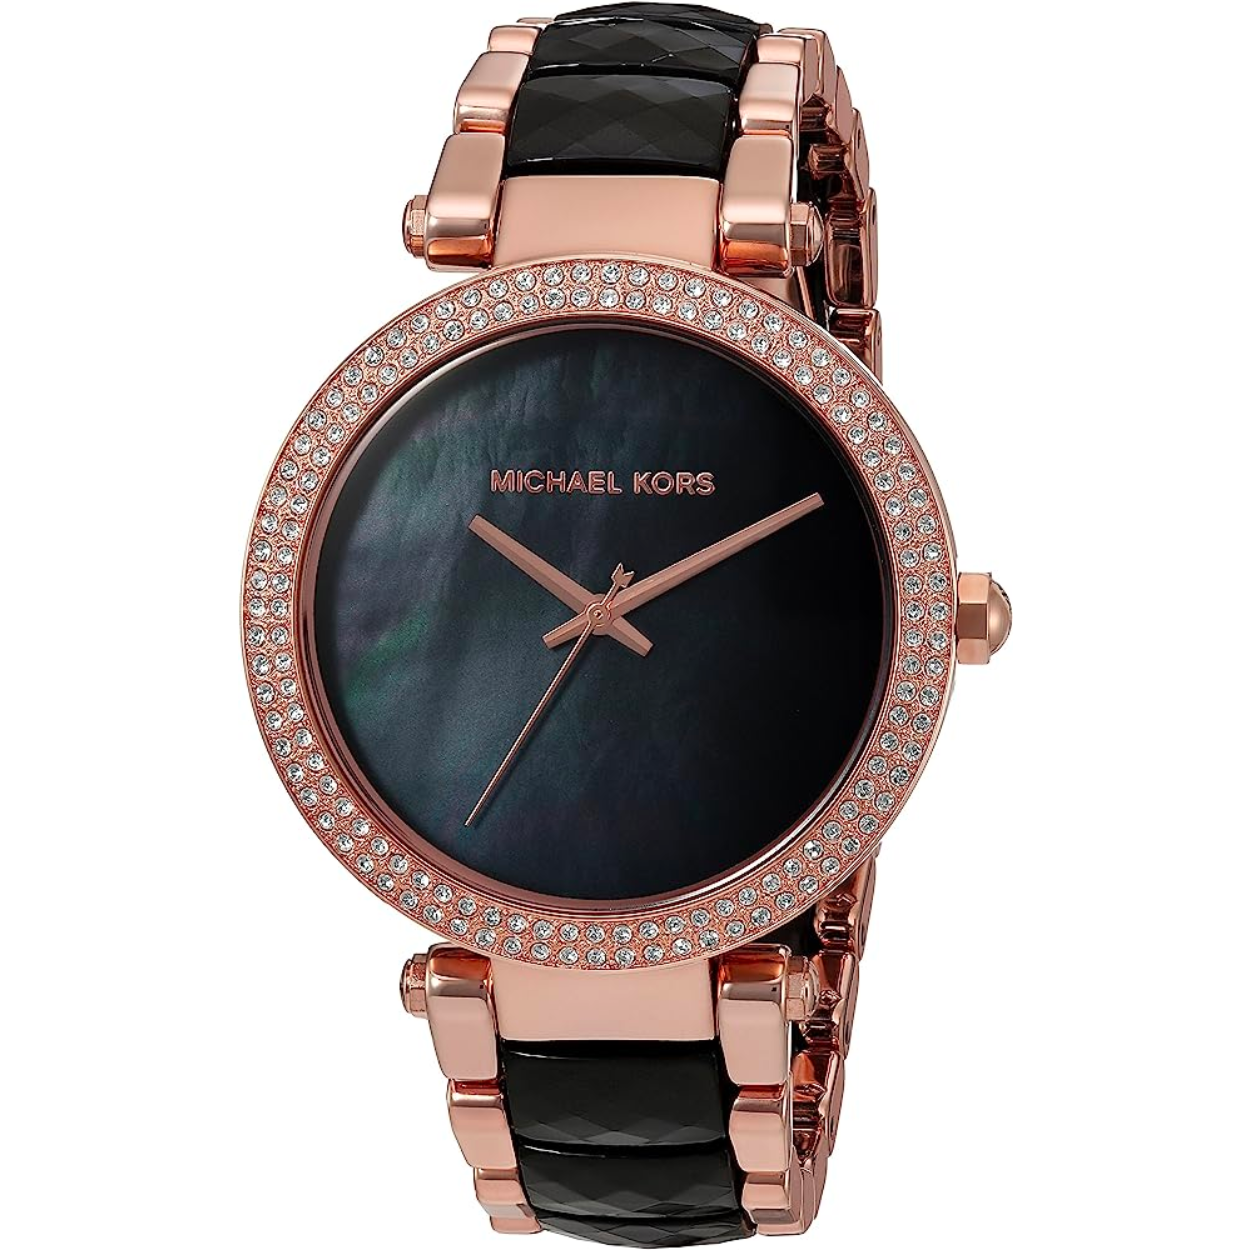 Michael Kors Parker Black Rose Gold Womens Watch MK6414 xách tay chính  hãng giá rẻ bảo hành dài  Đồng hồ nữ  Senmix